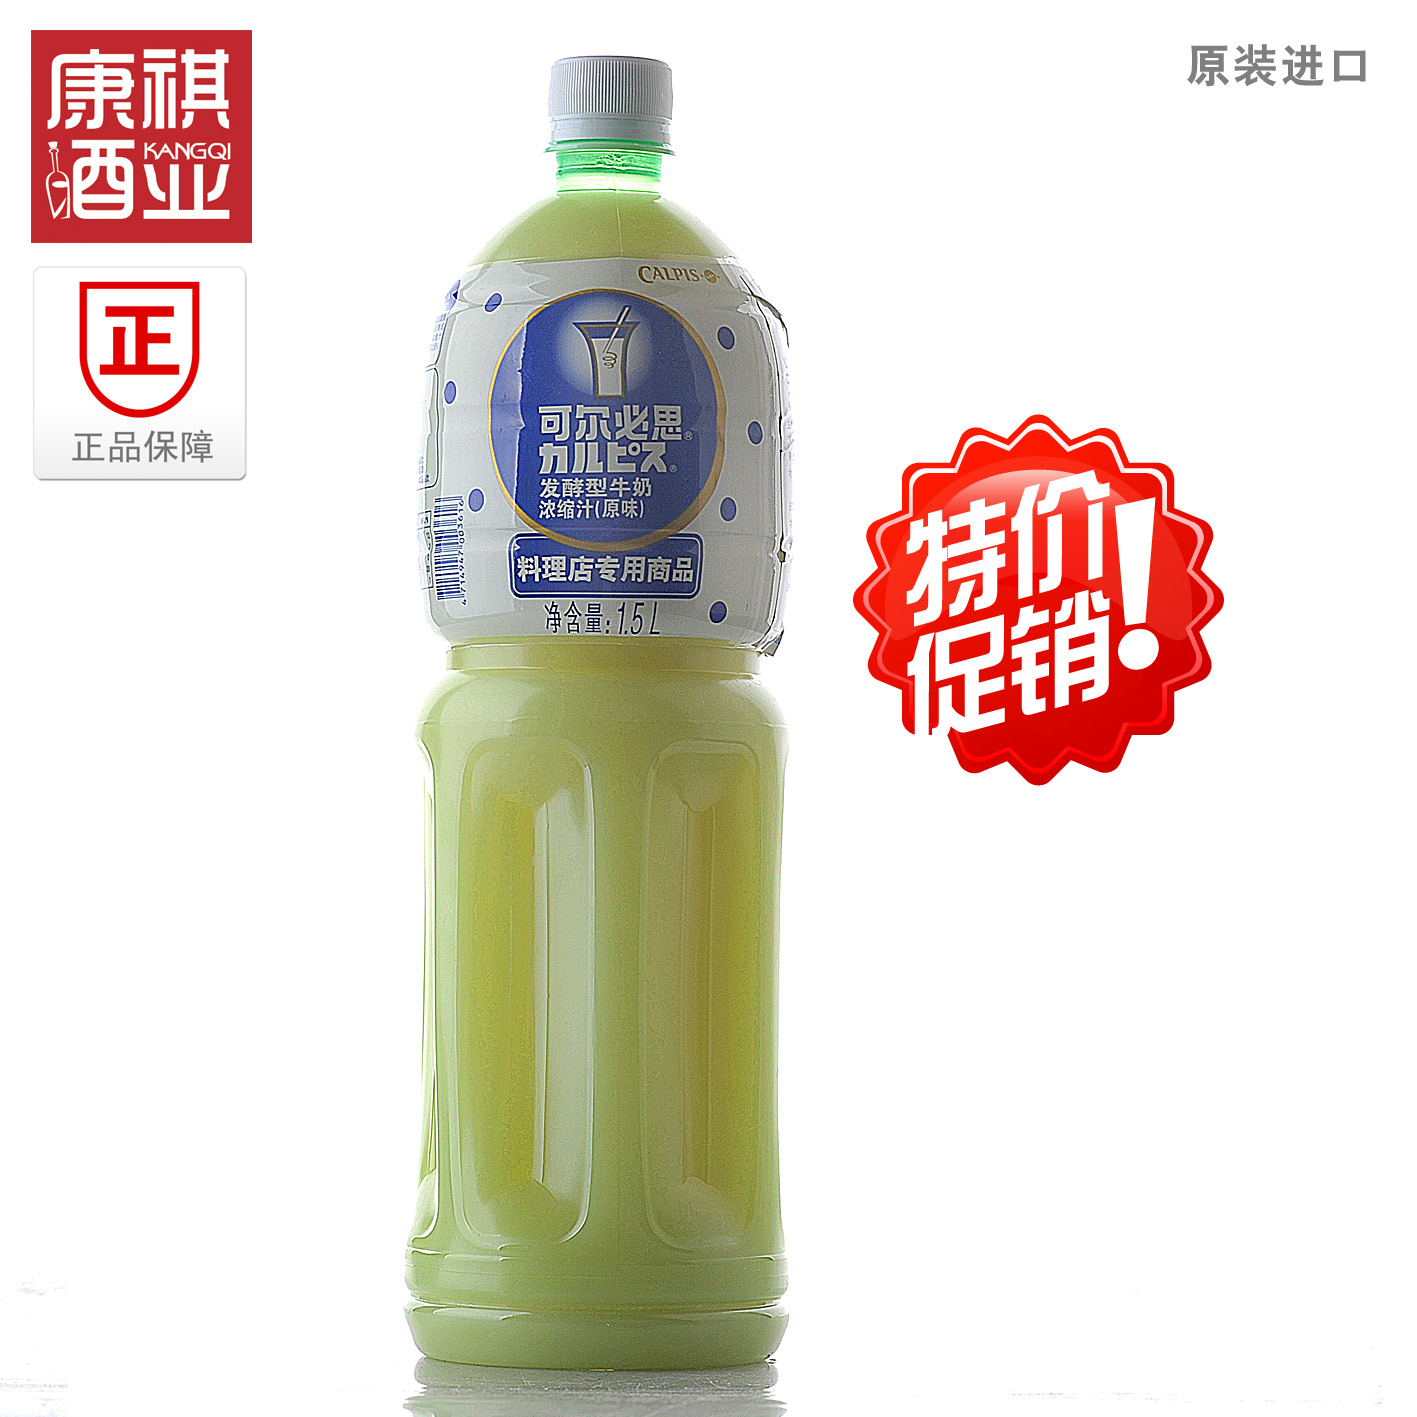 原装进口台湾饮料可尔必思发酵型牛奶浓缩汁原味1.5L三得利苏打水